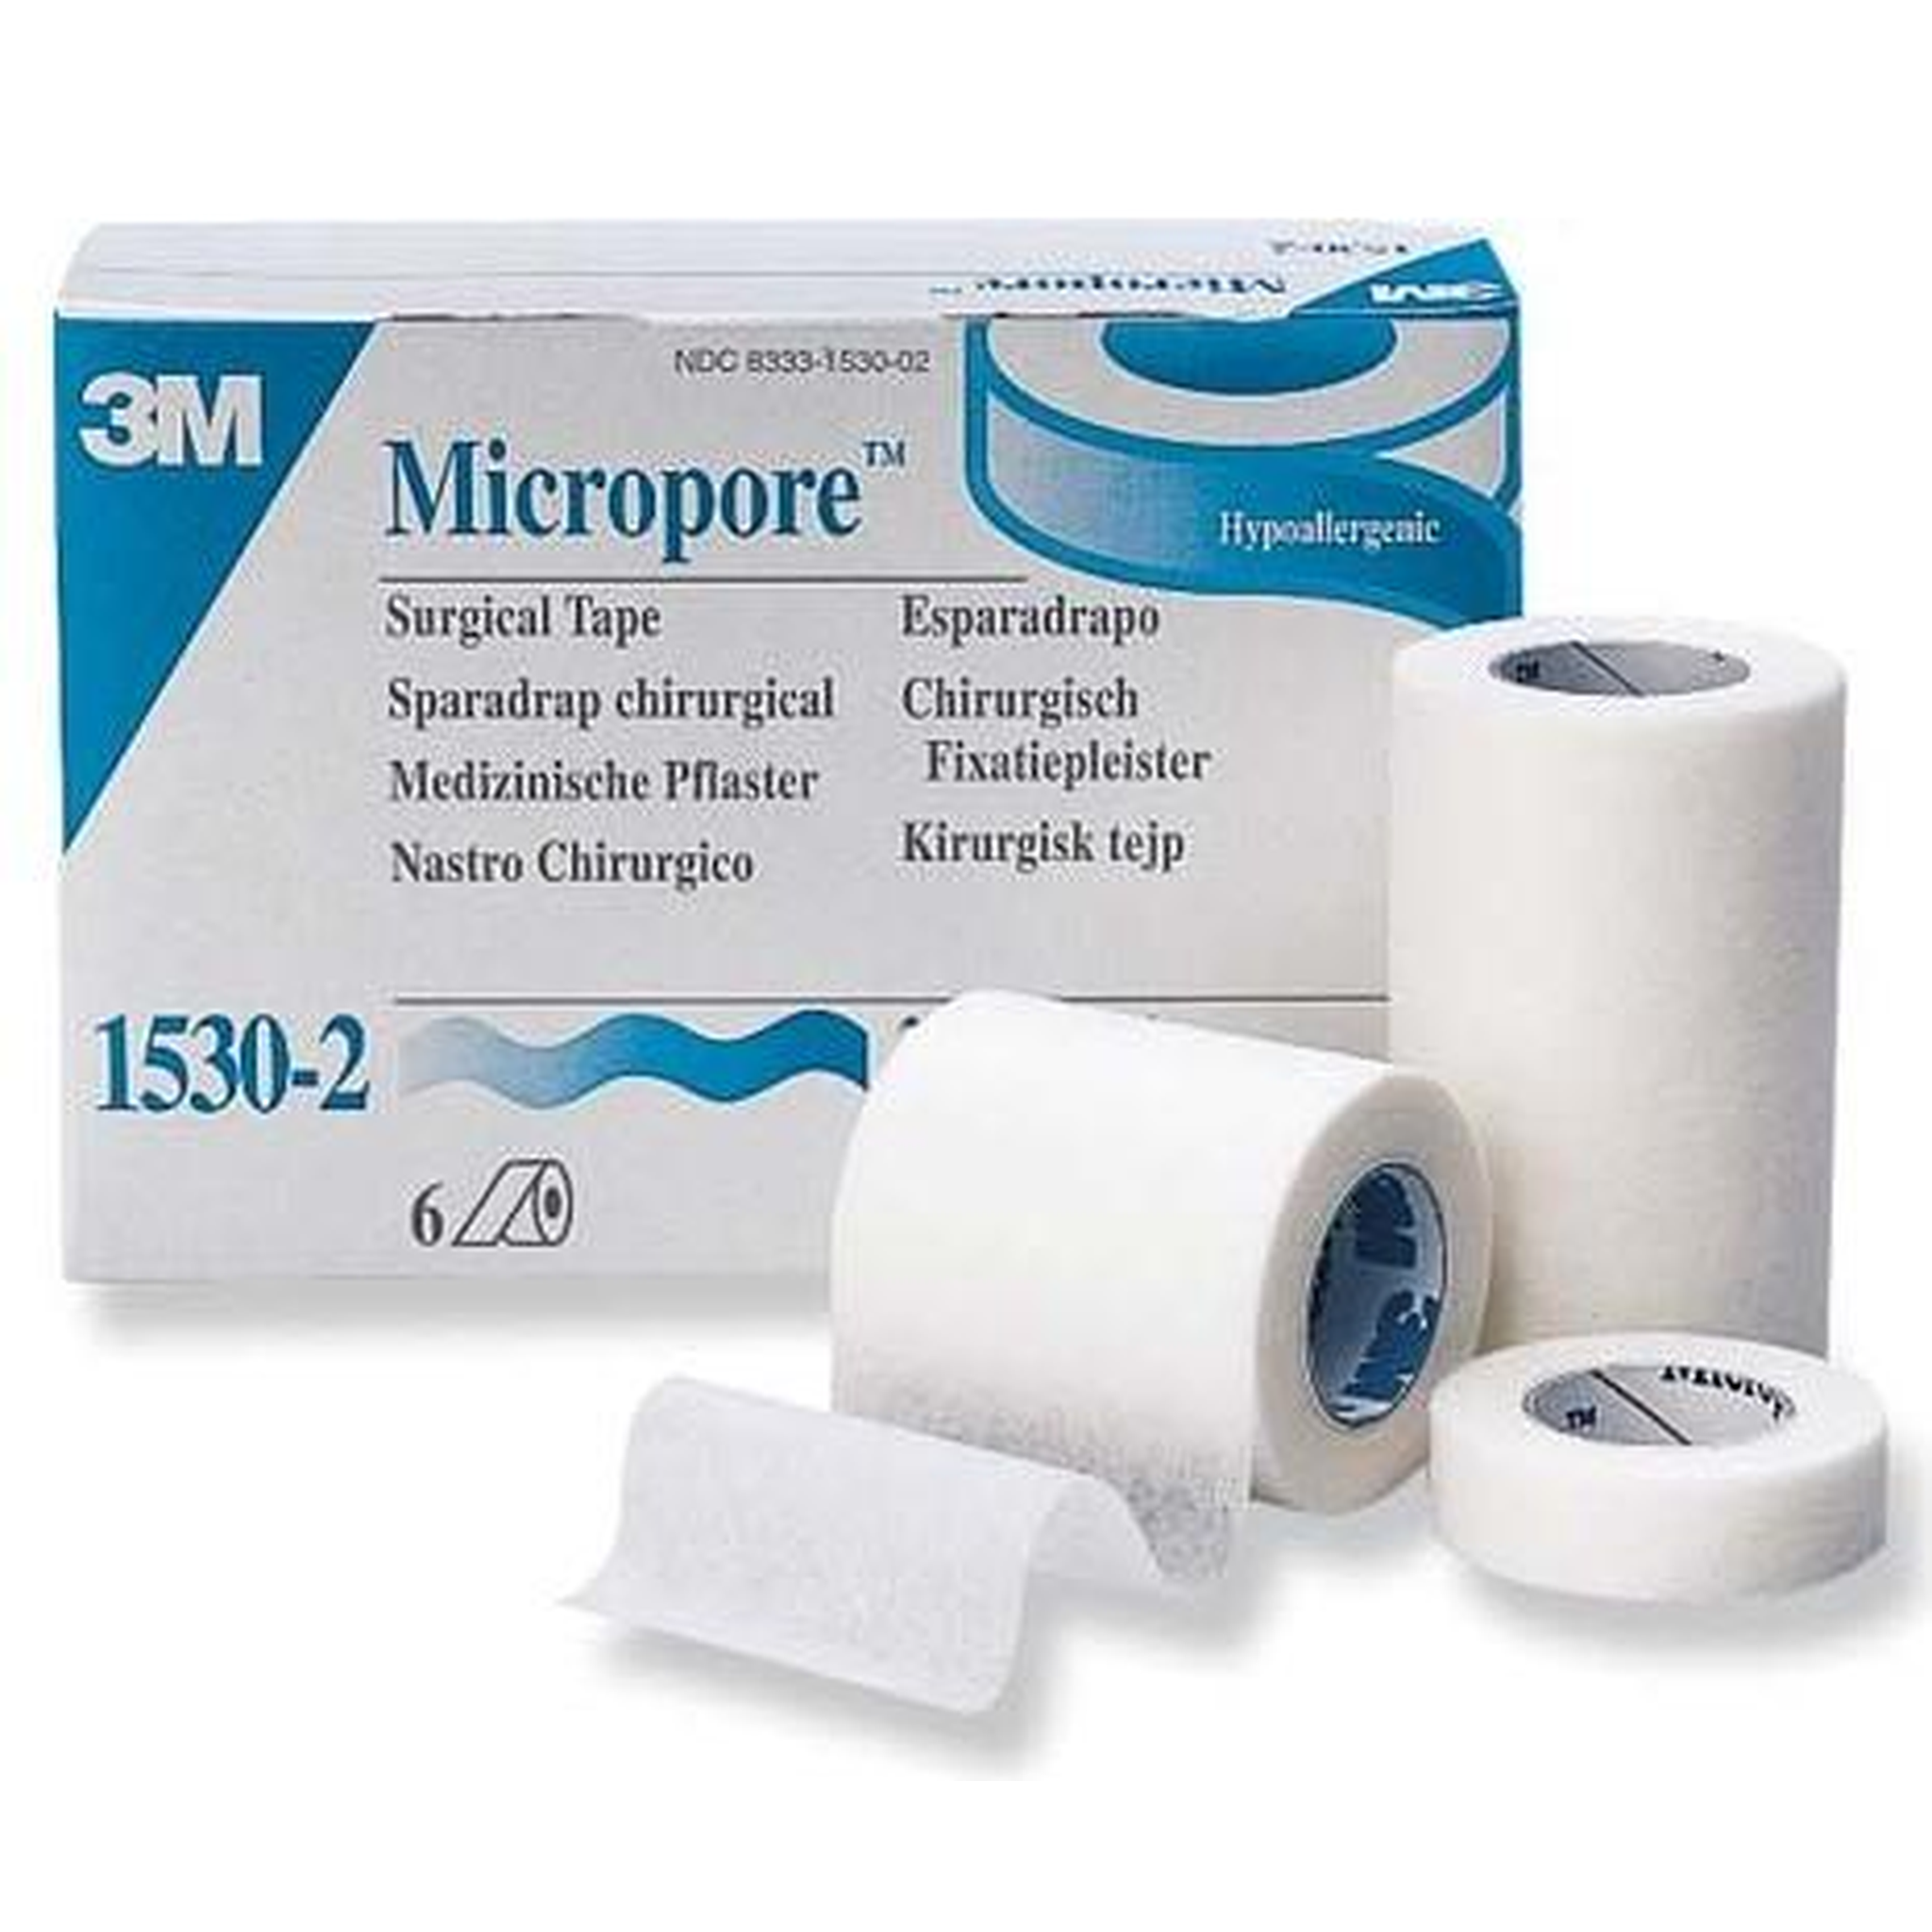 micropore tape